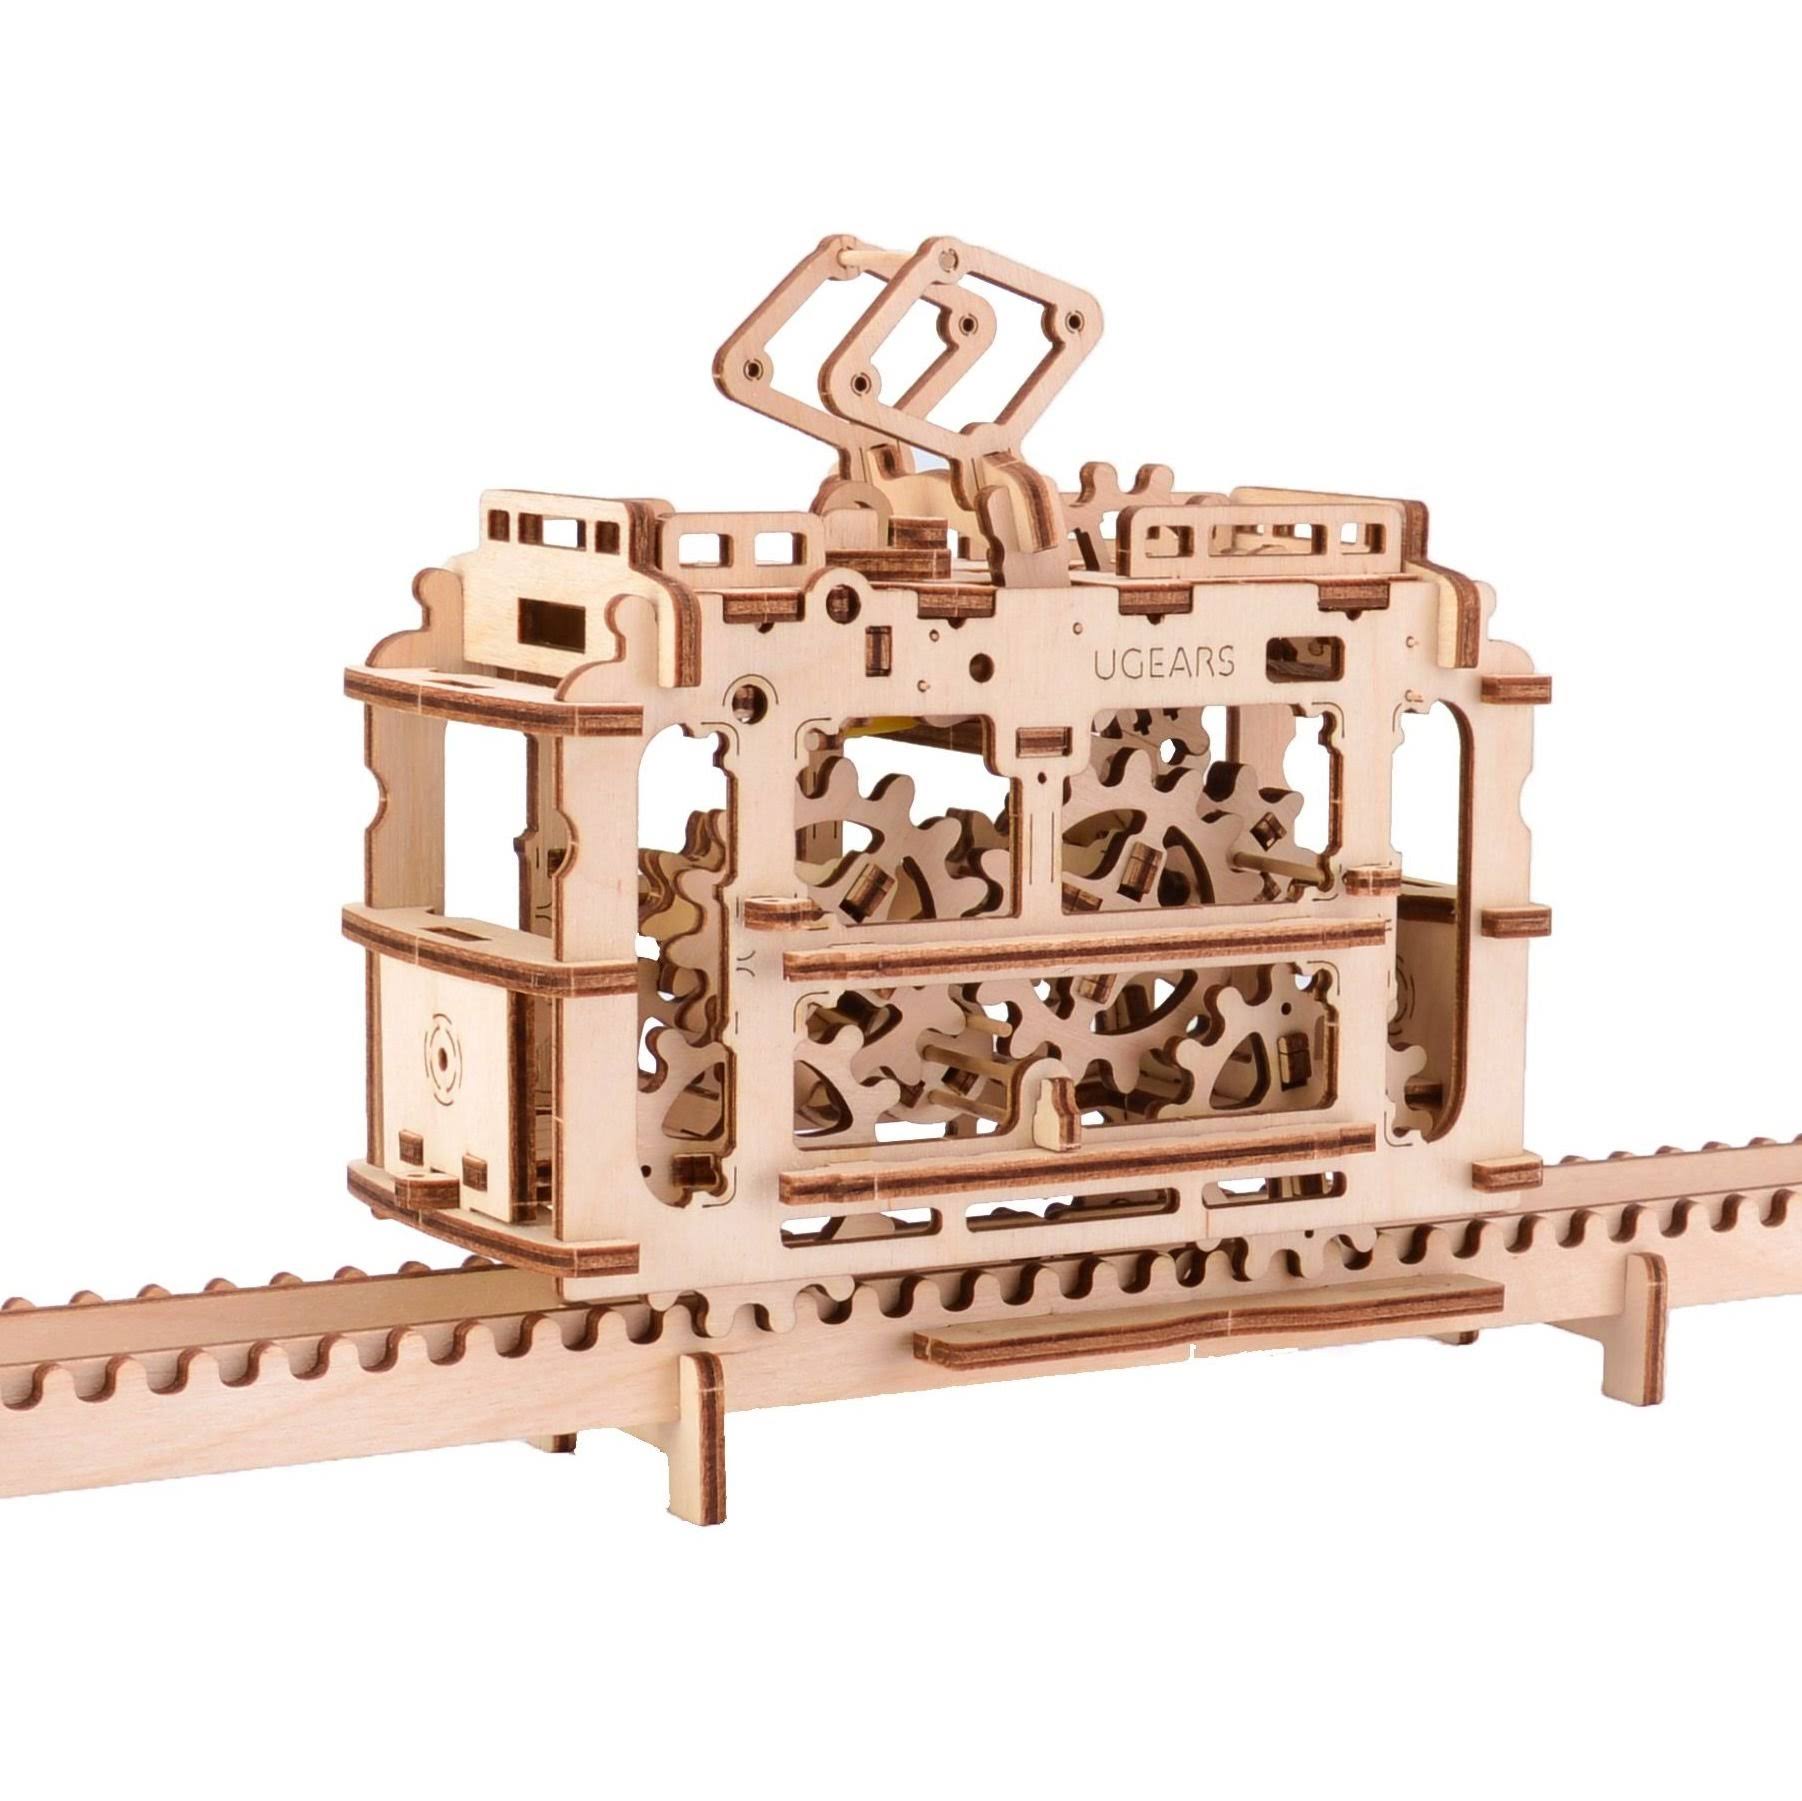 Ugears Tram 3D Mechanical Wooden Model Construction Kit